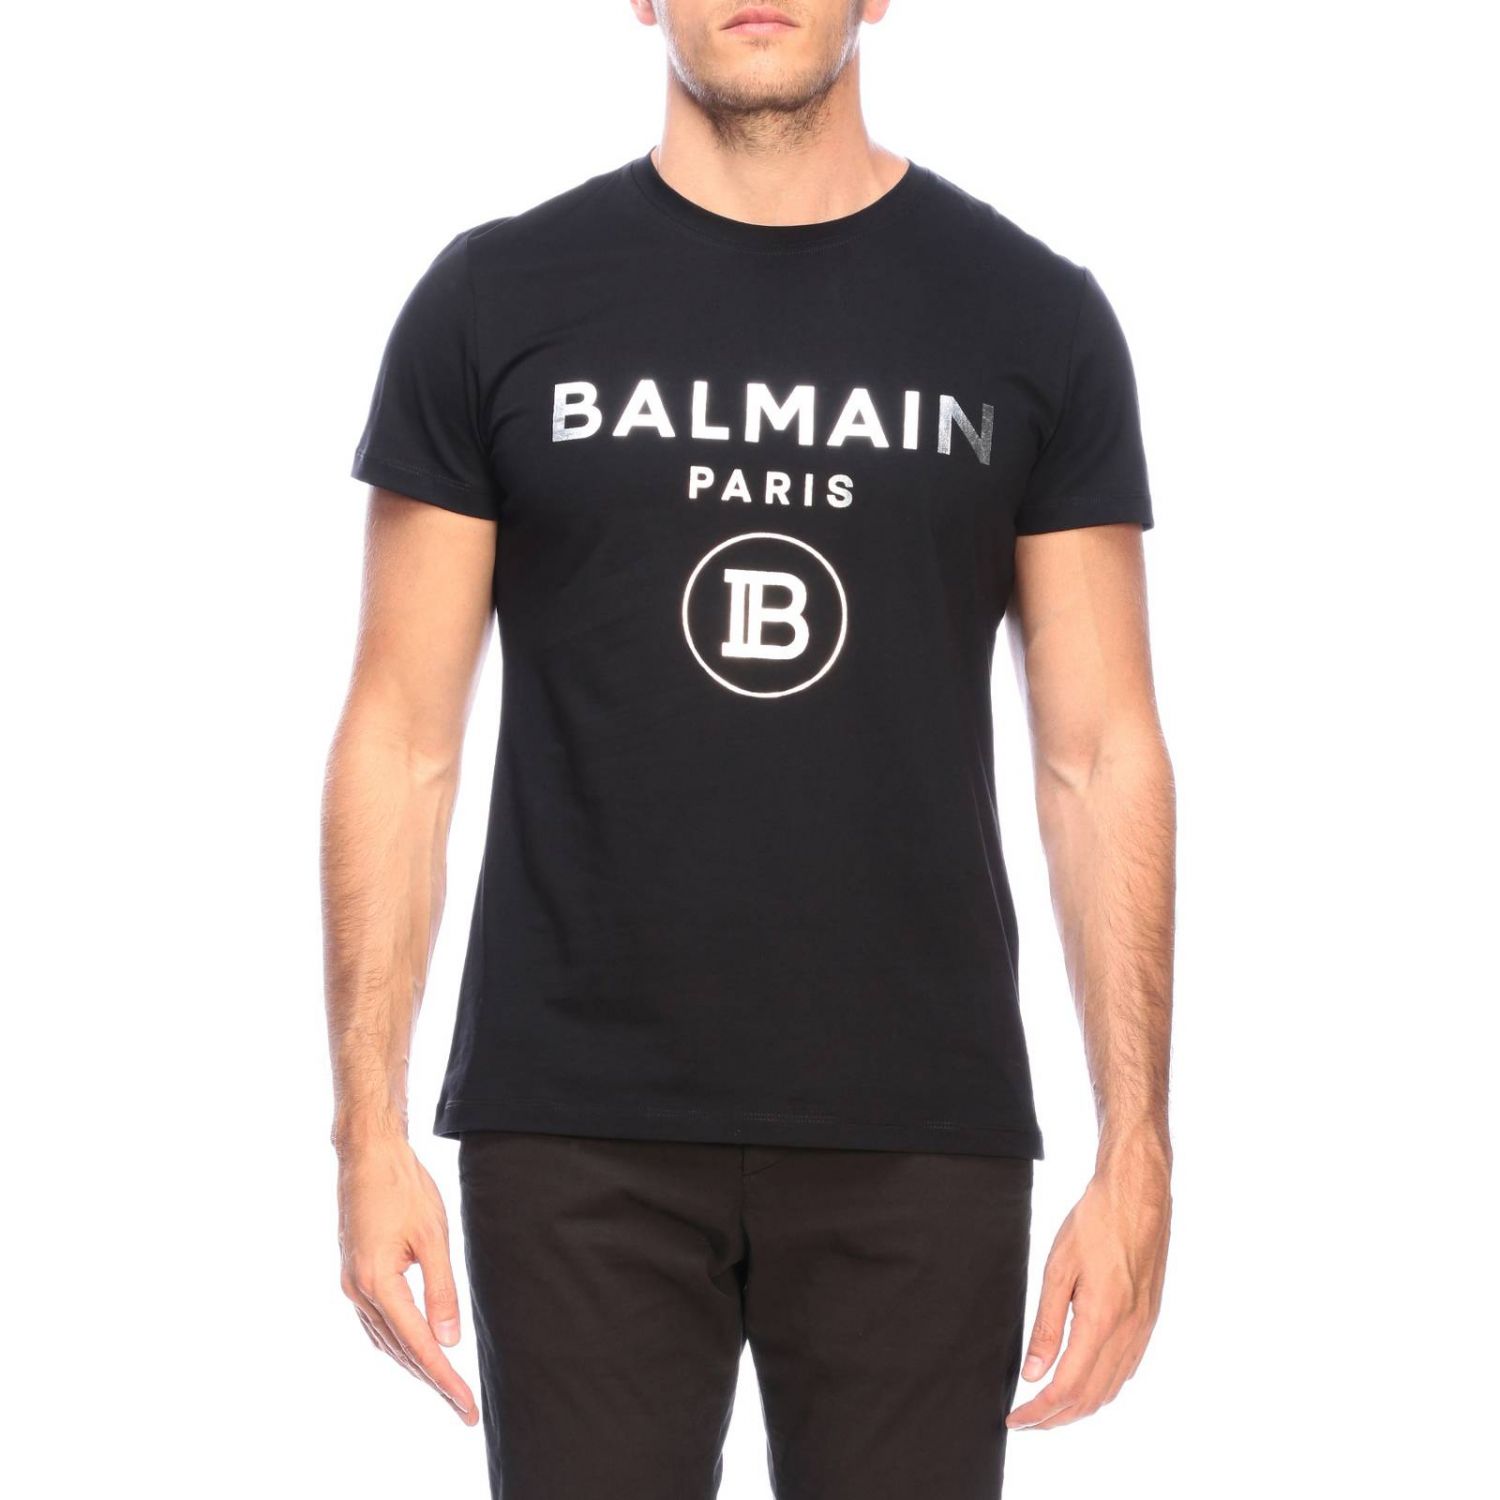 Balmain Shirt For Men Hotsell, 59% OFF | www.hcb.cat